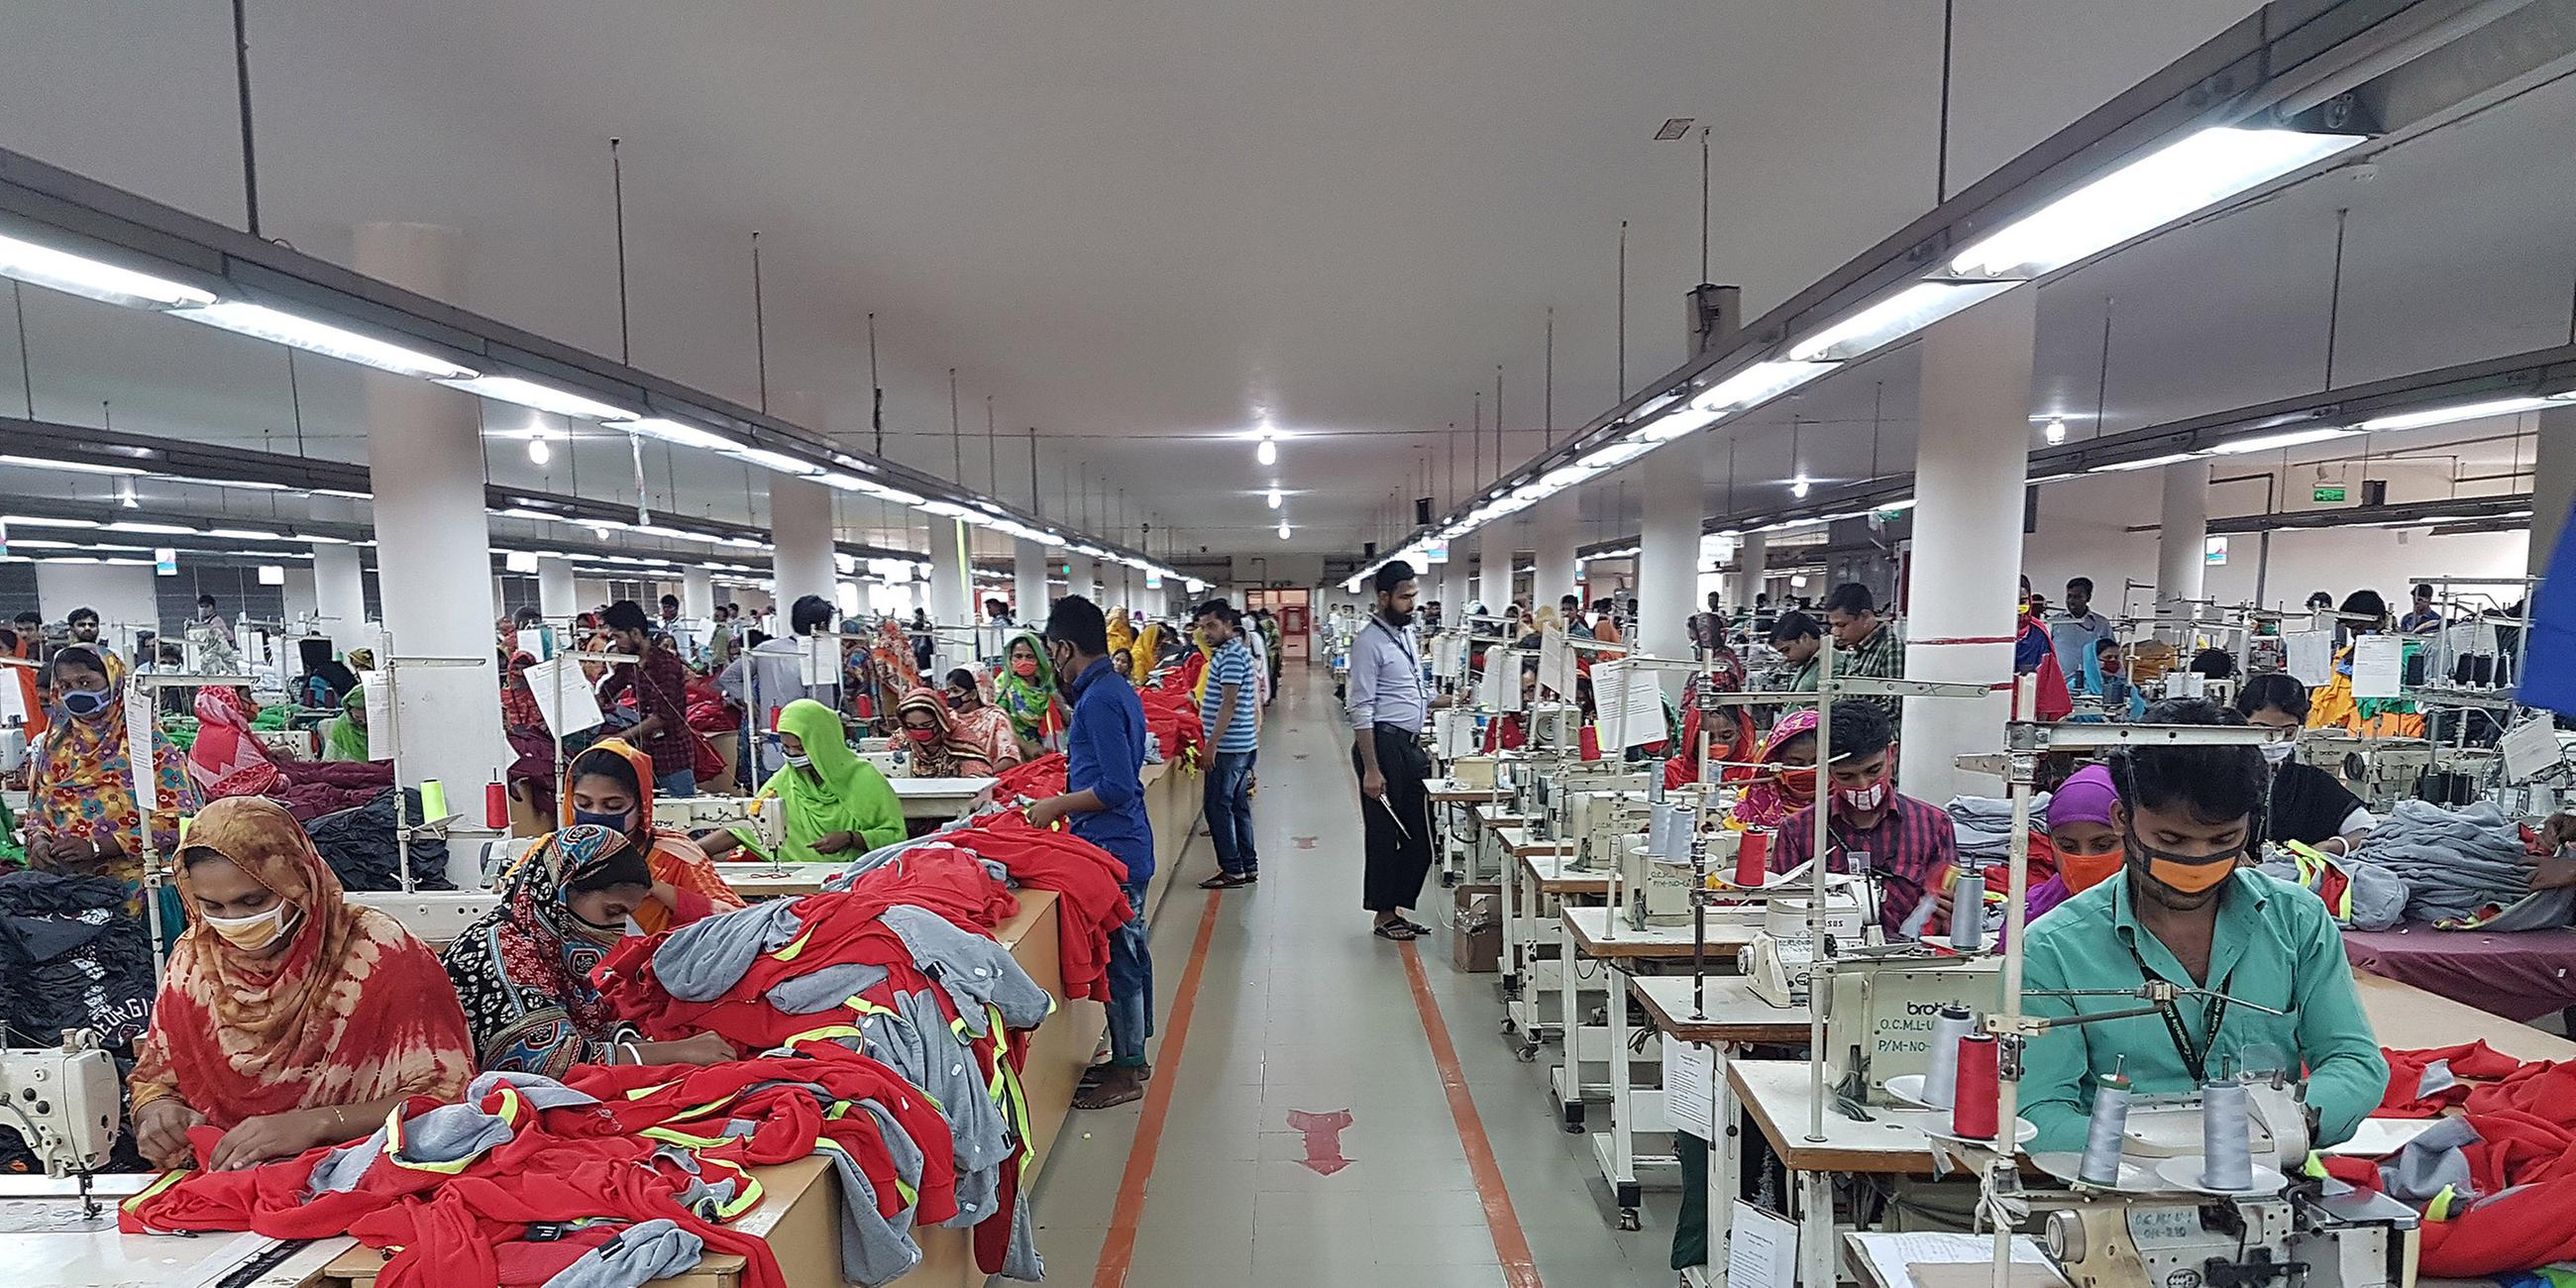 Archiv: Textilfabrik in Bangladesch, aufgenommen am 10.04.2018